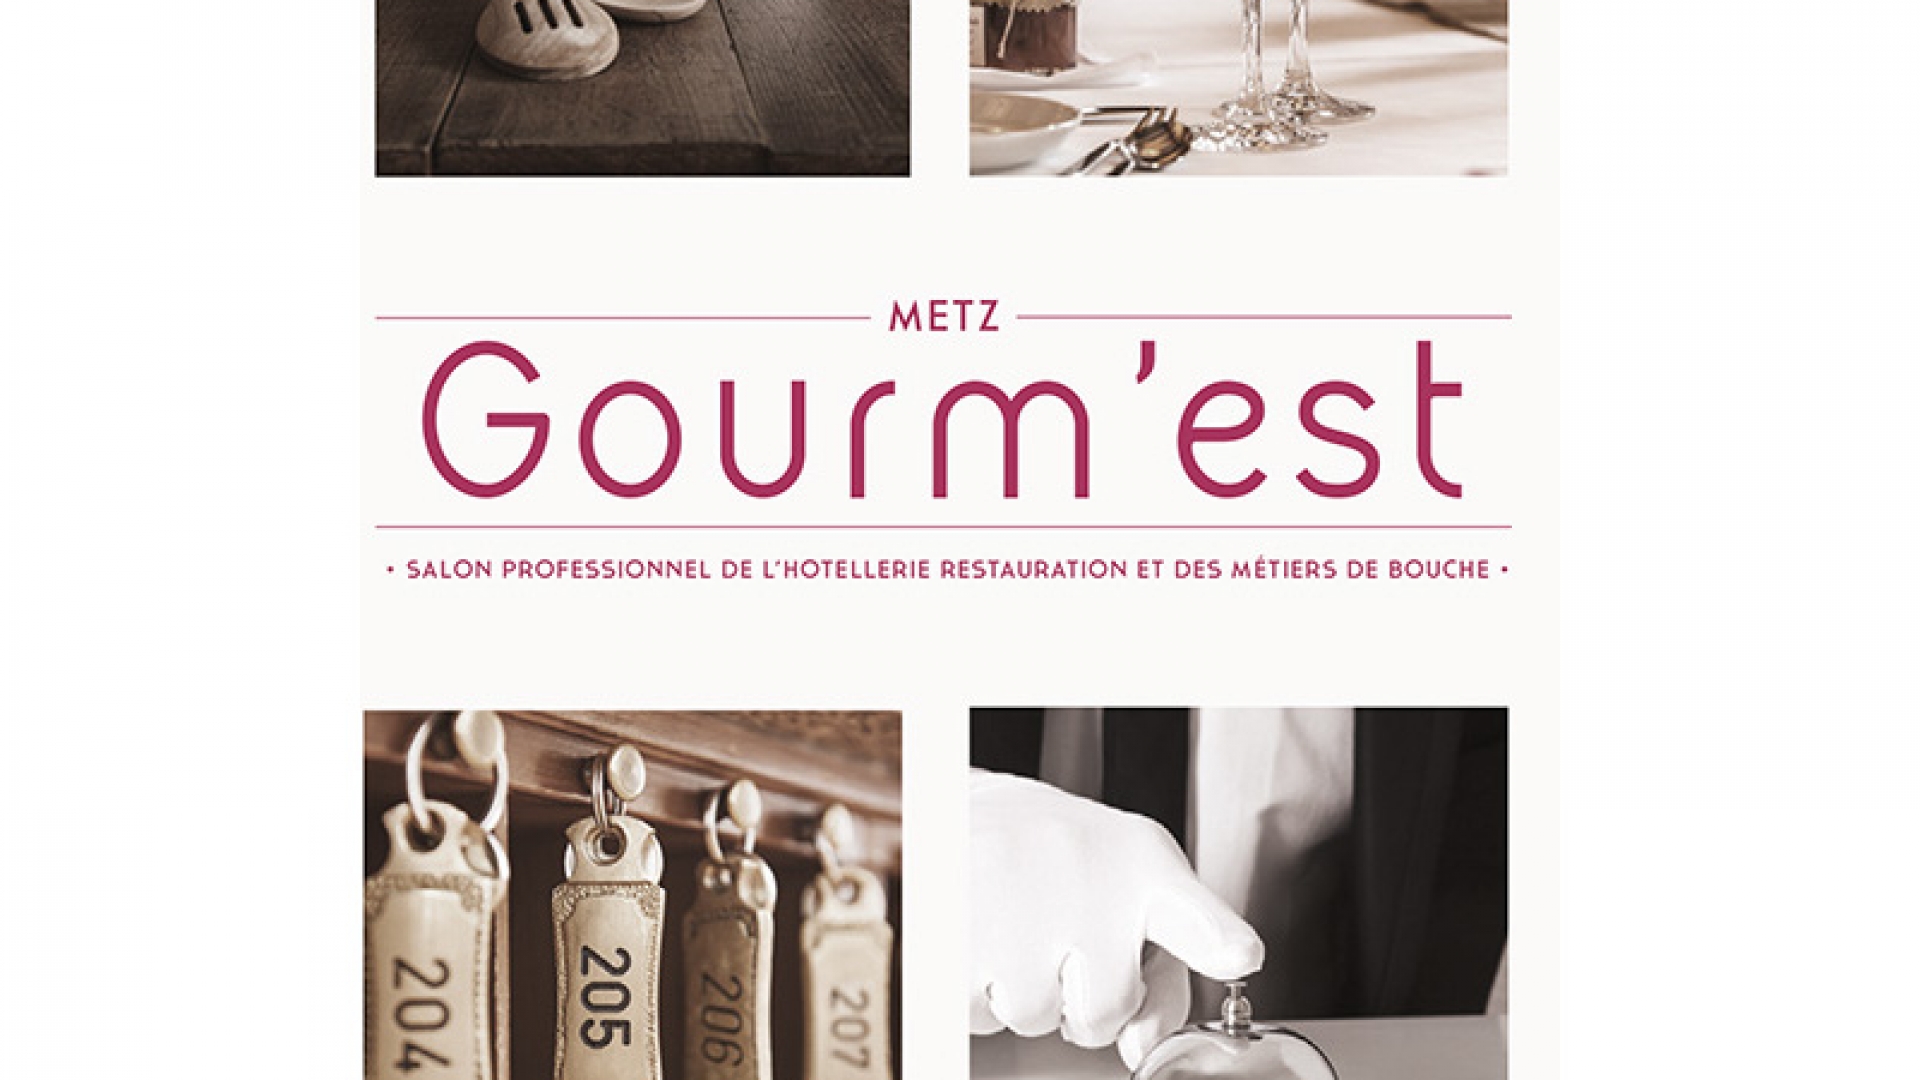 GourmEst2017